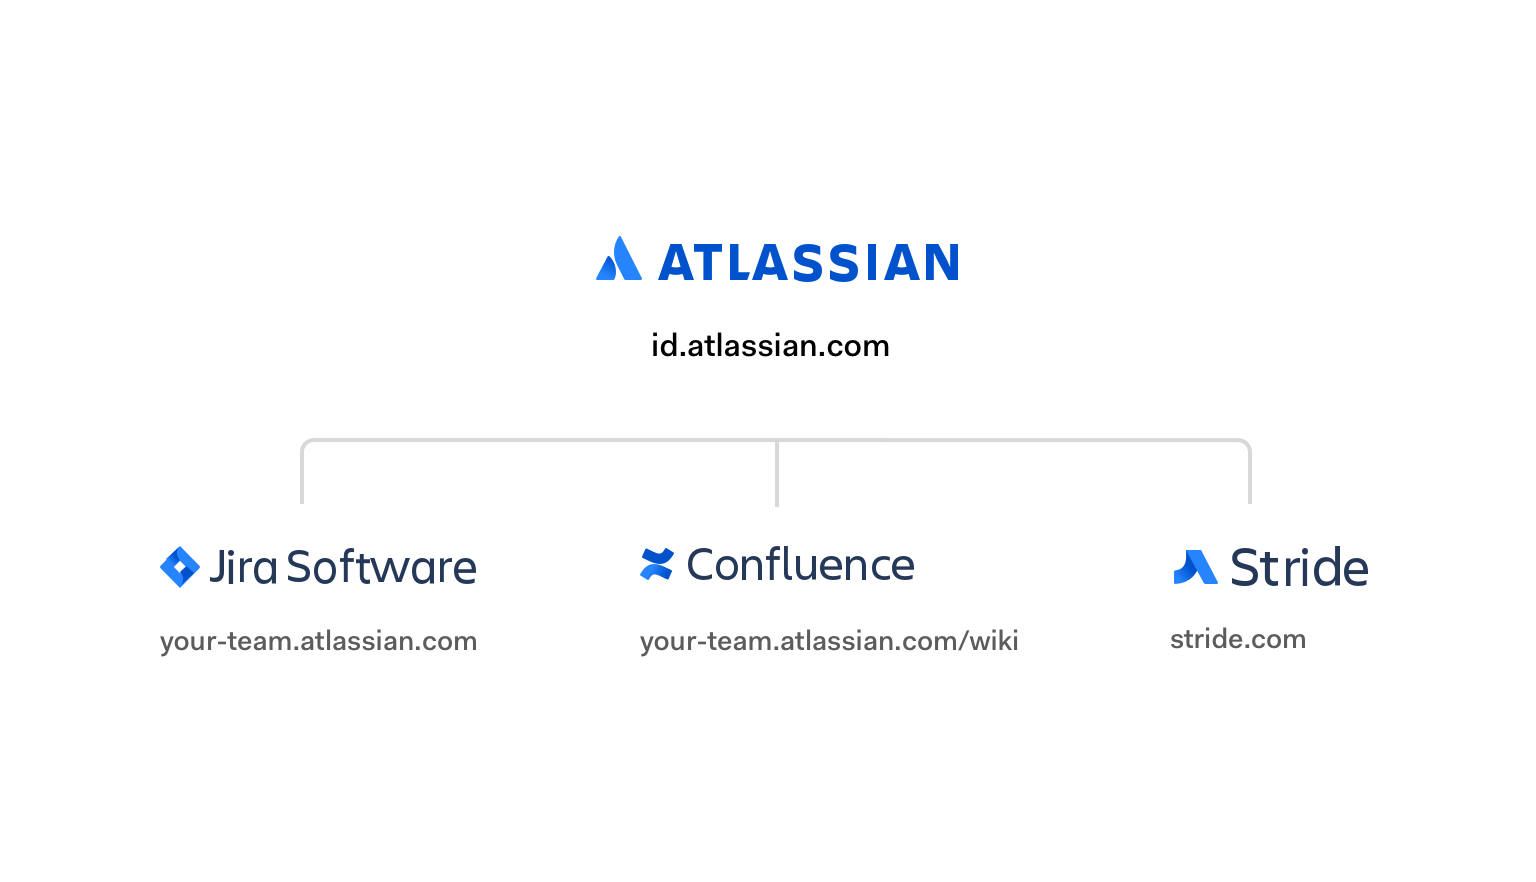 Atlassian central authorization provider